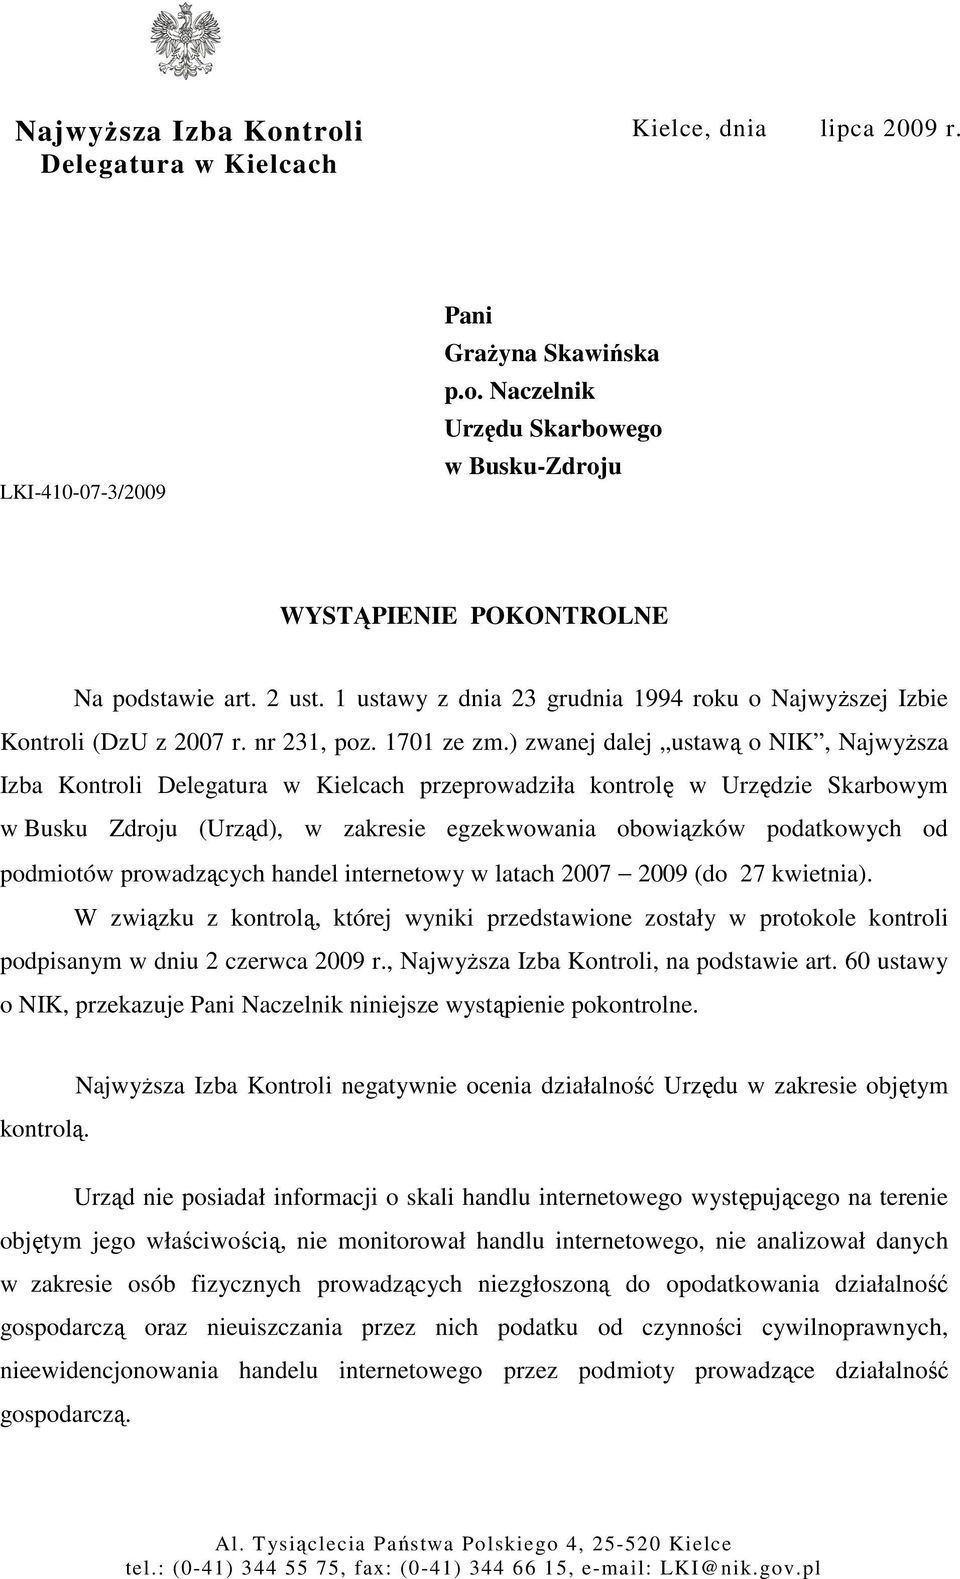 ) zwanej dalej ustawą o NIK, NajwyŜsza Izba Kontroli Delegatura w Kielcach przeprowadziła kontrolę w Urzędzie Skarbowym w Busku Zdroju (Urząd), w zakresie egzekwowania obowiązków podatkowych od